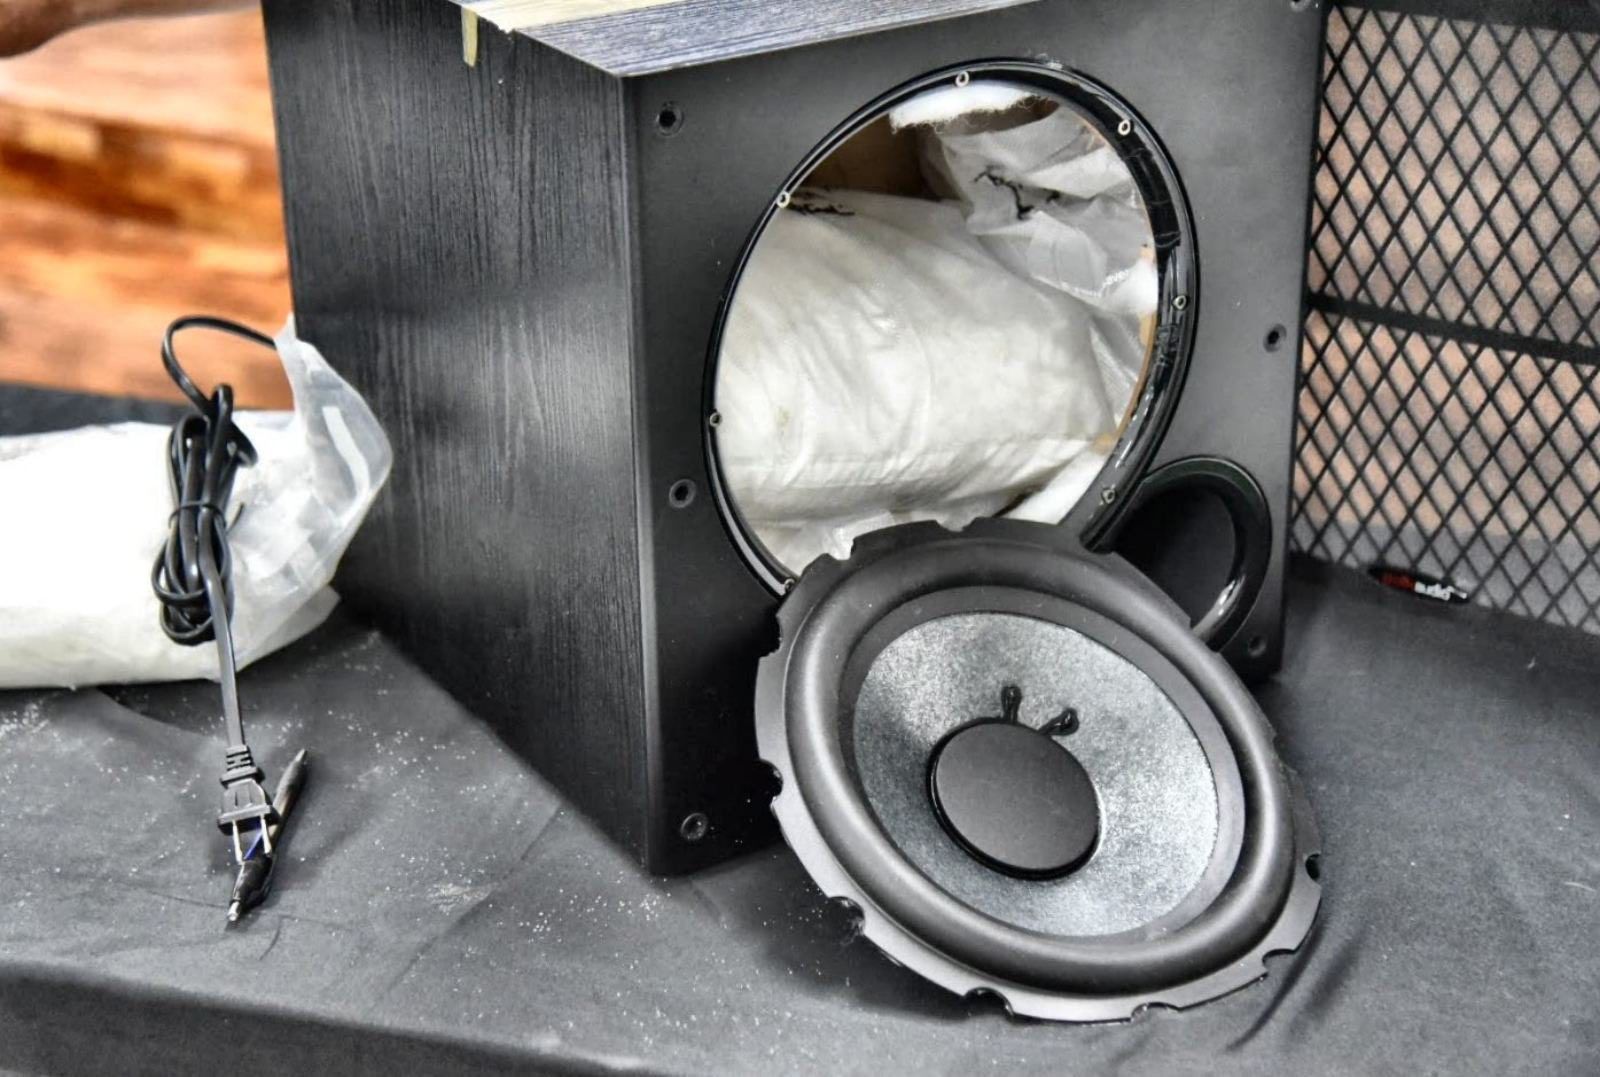 P141 milyong shabu sa loob ng speaker nasabat